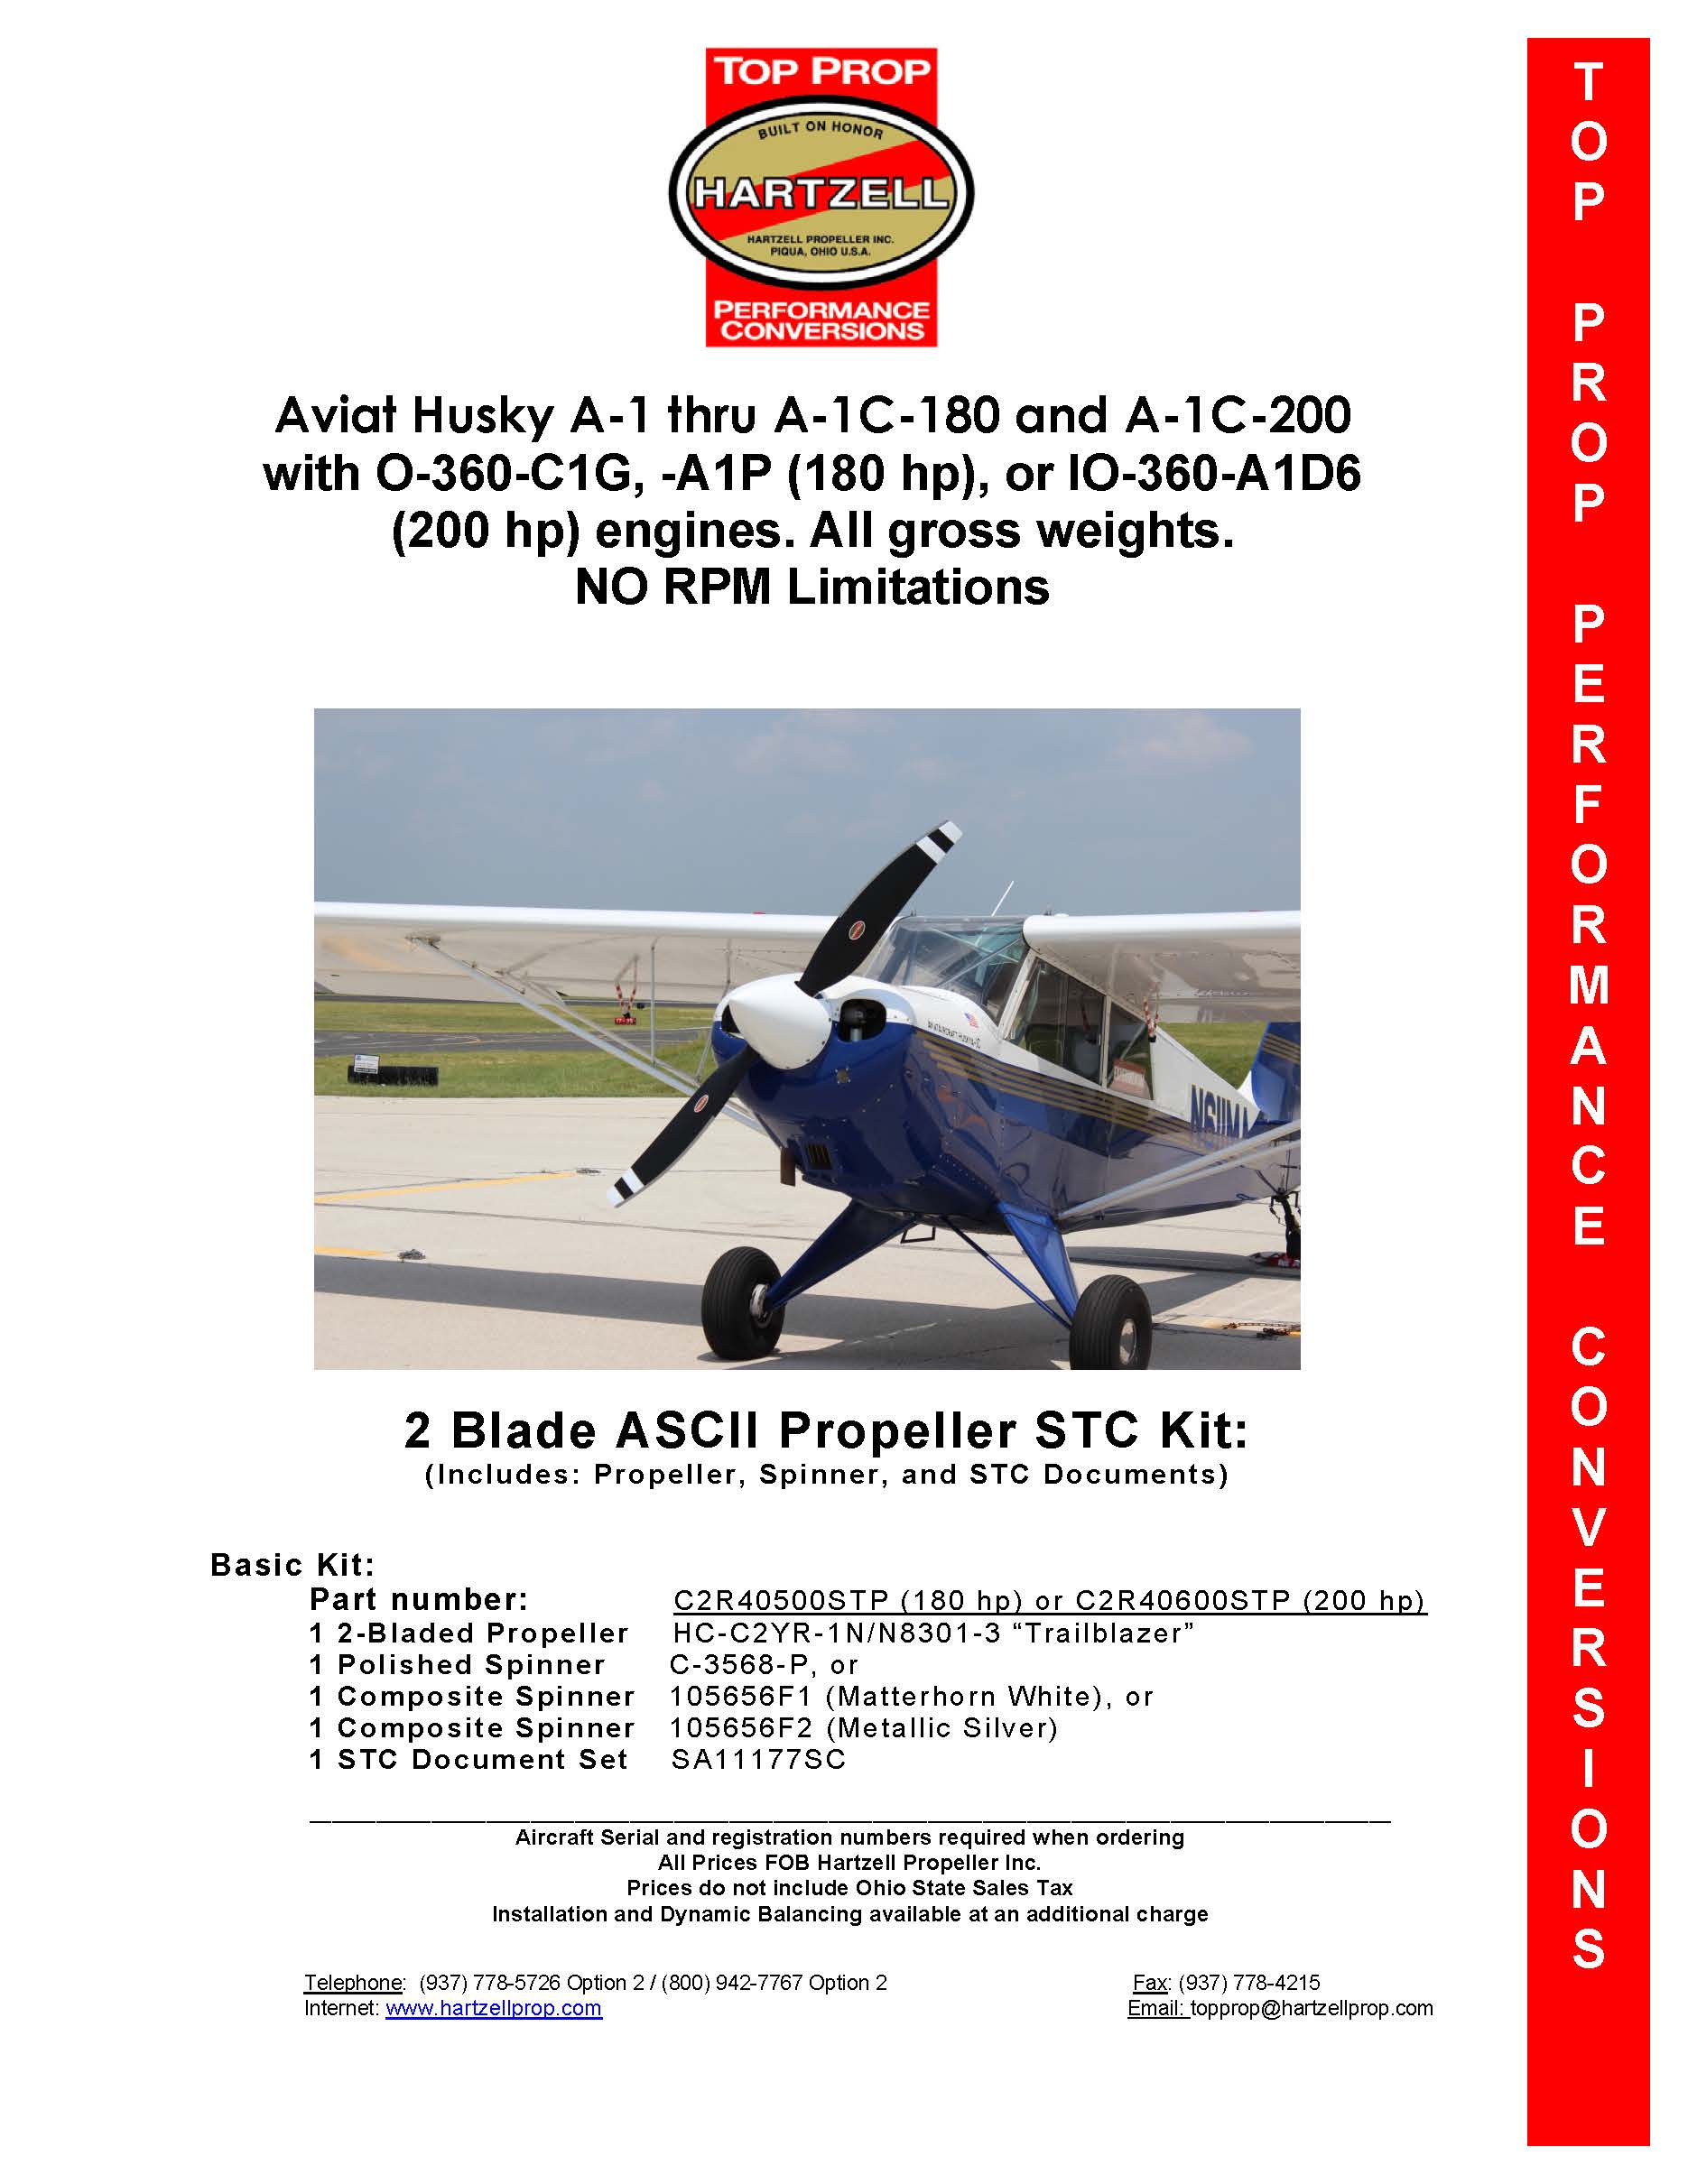 Aviat-Husky-A-1-C2R40500STP-PAGE-1